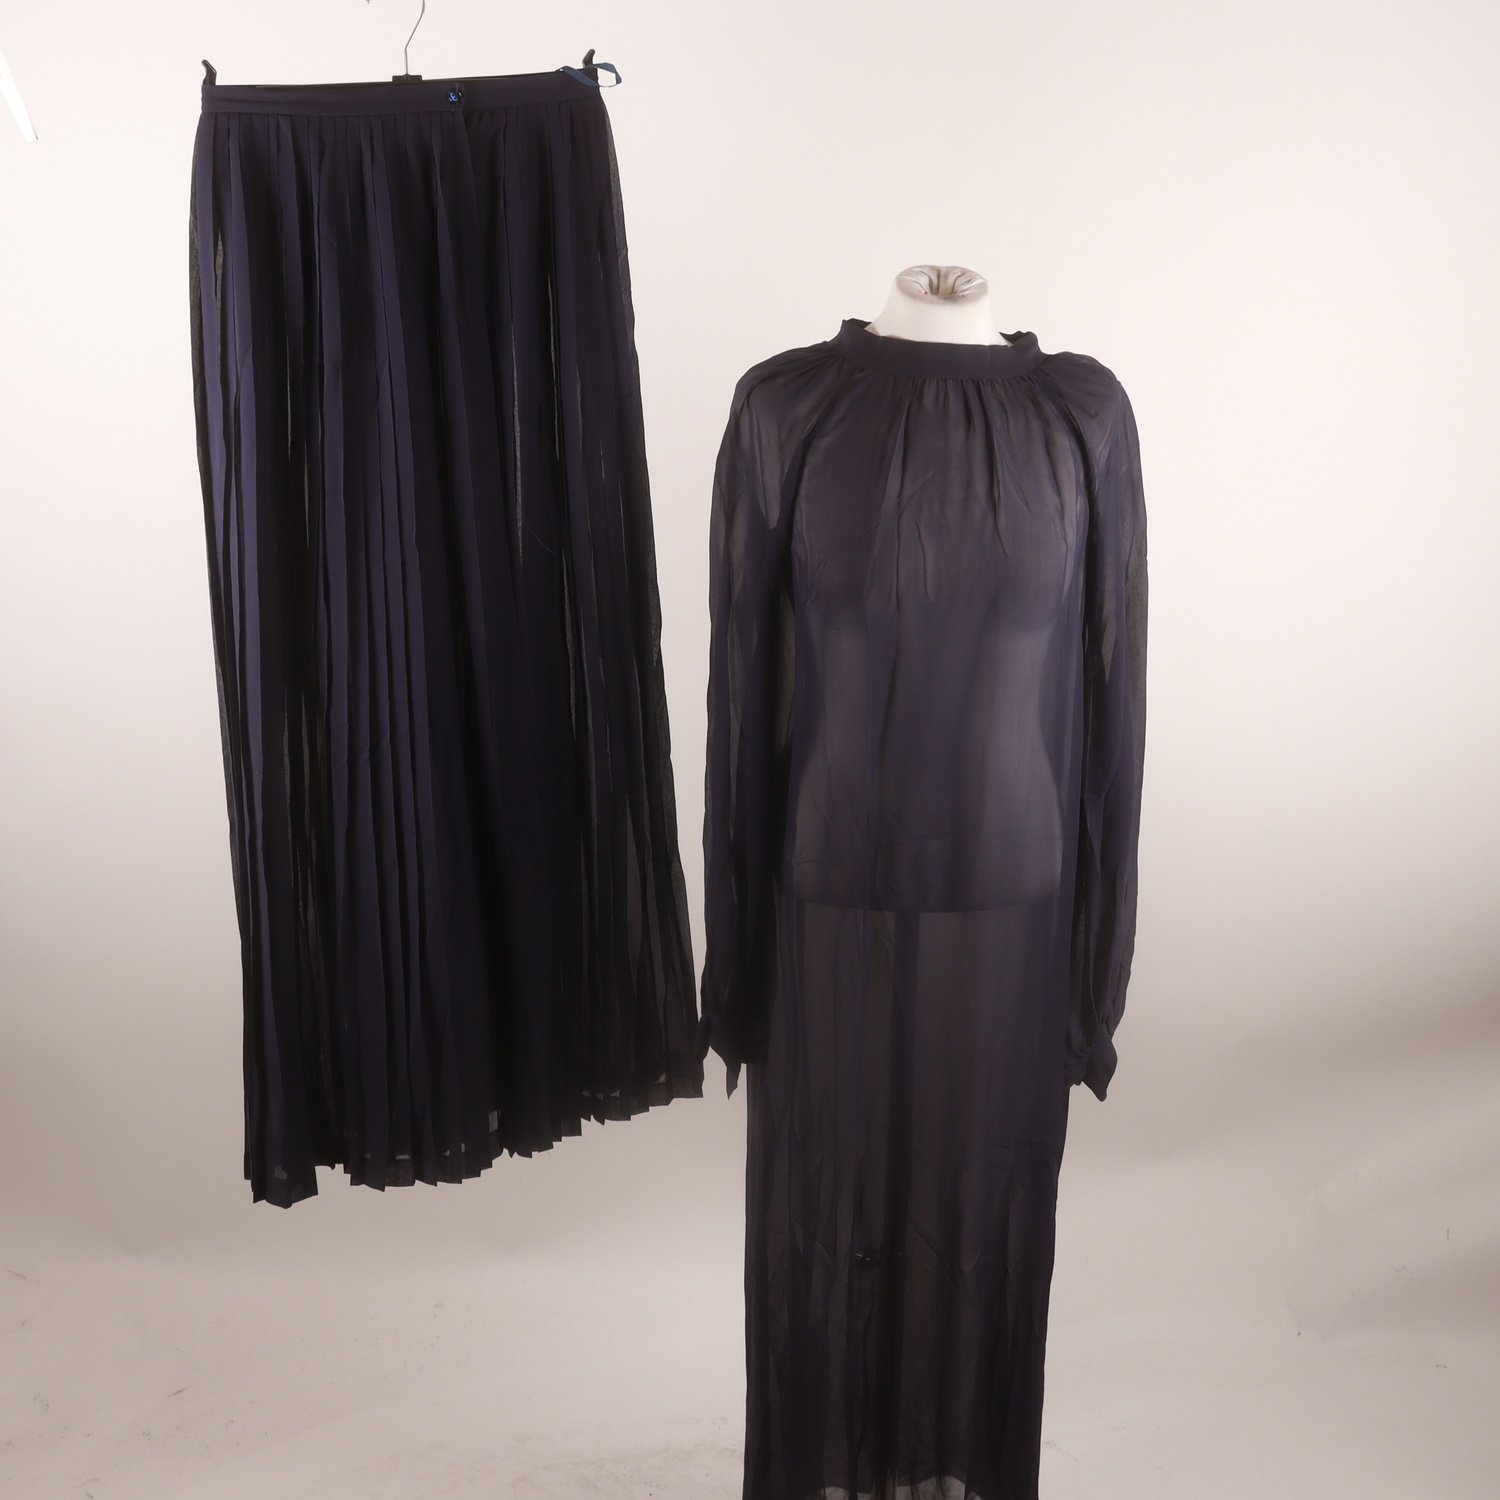 2-delad, klänning/kjol, Guy Laroche, lila, 100% silk, stl. 40